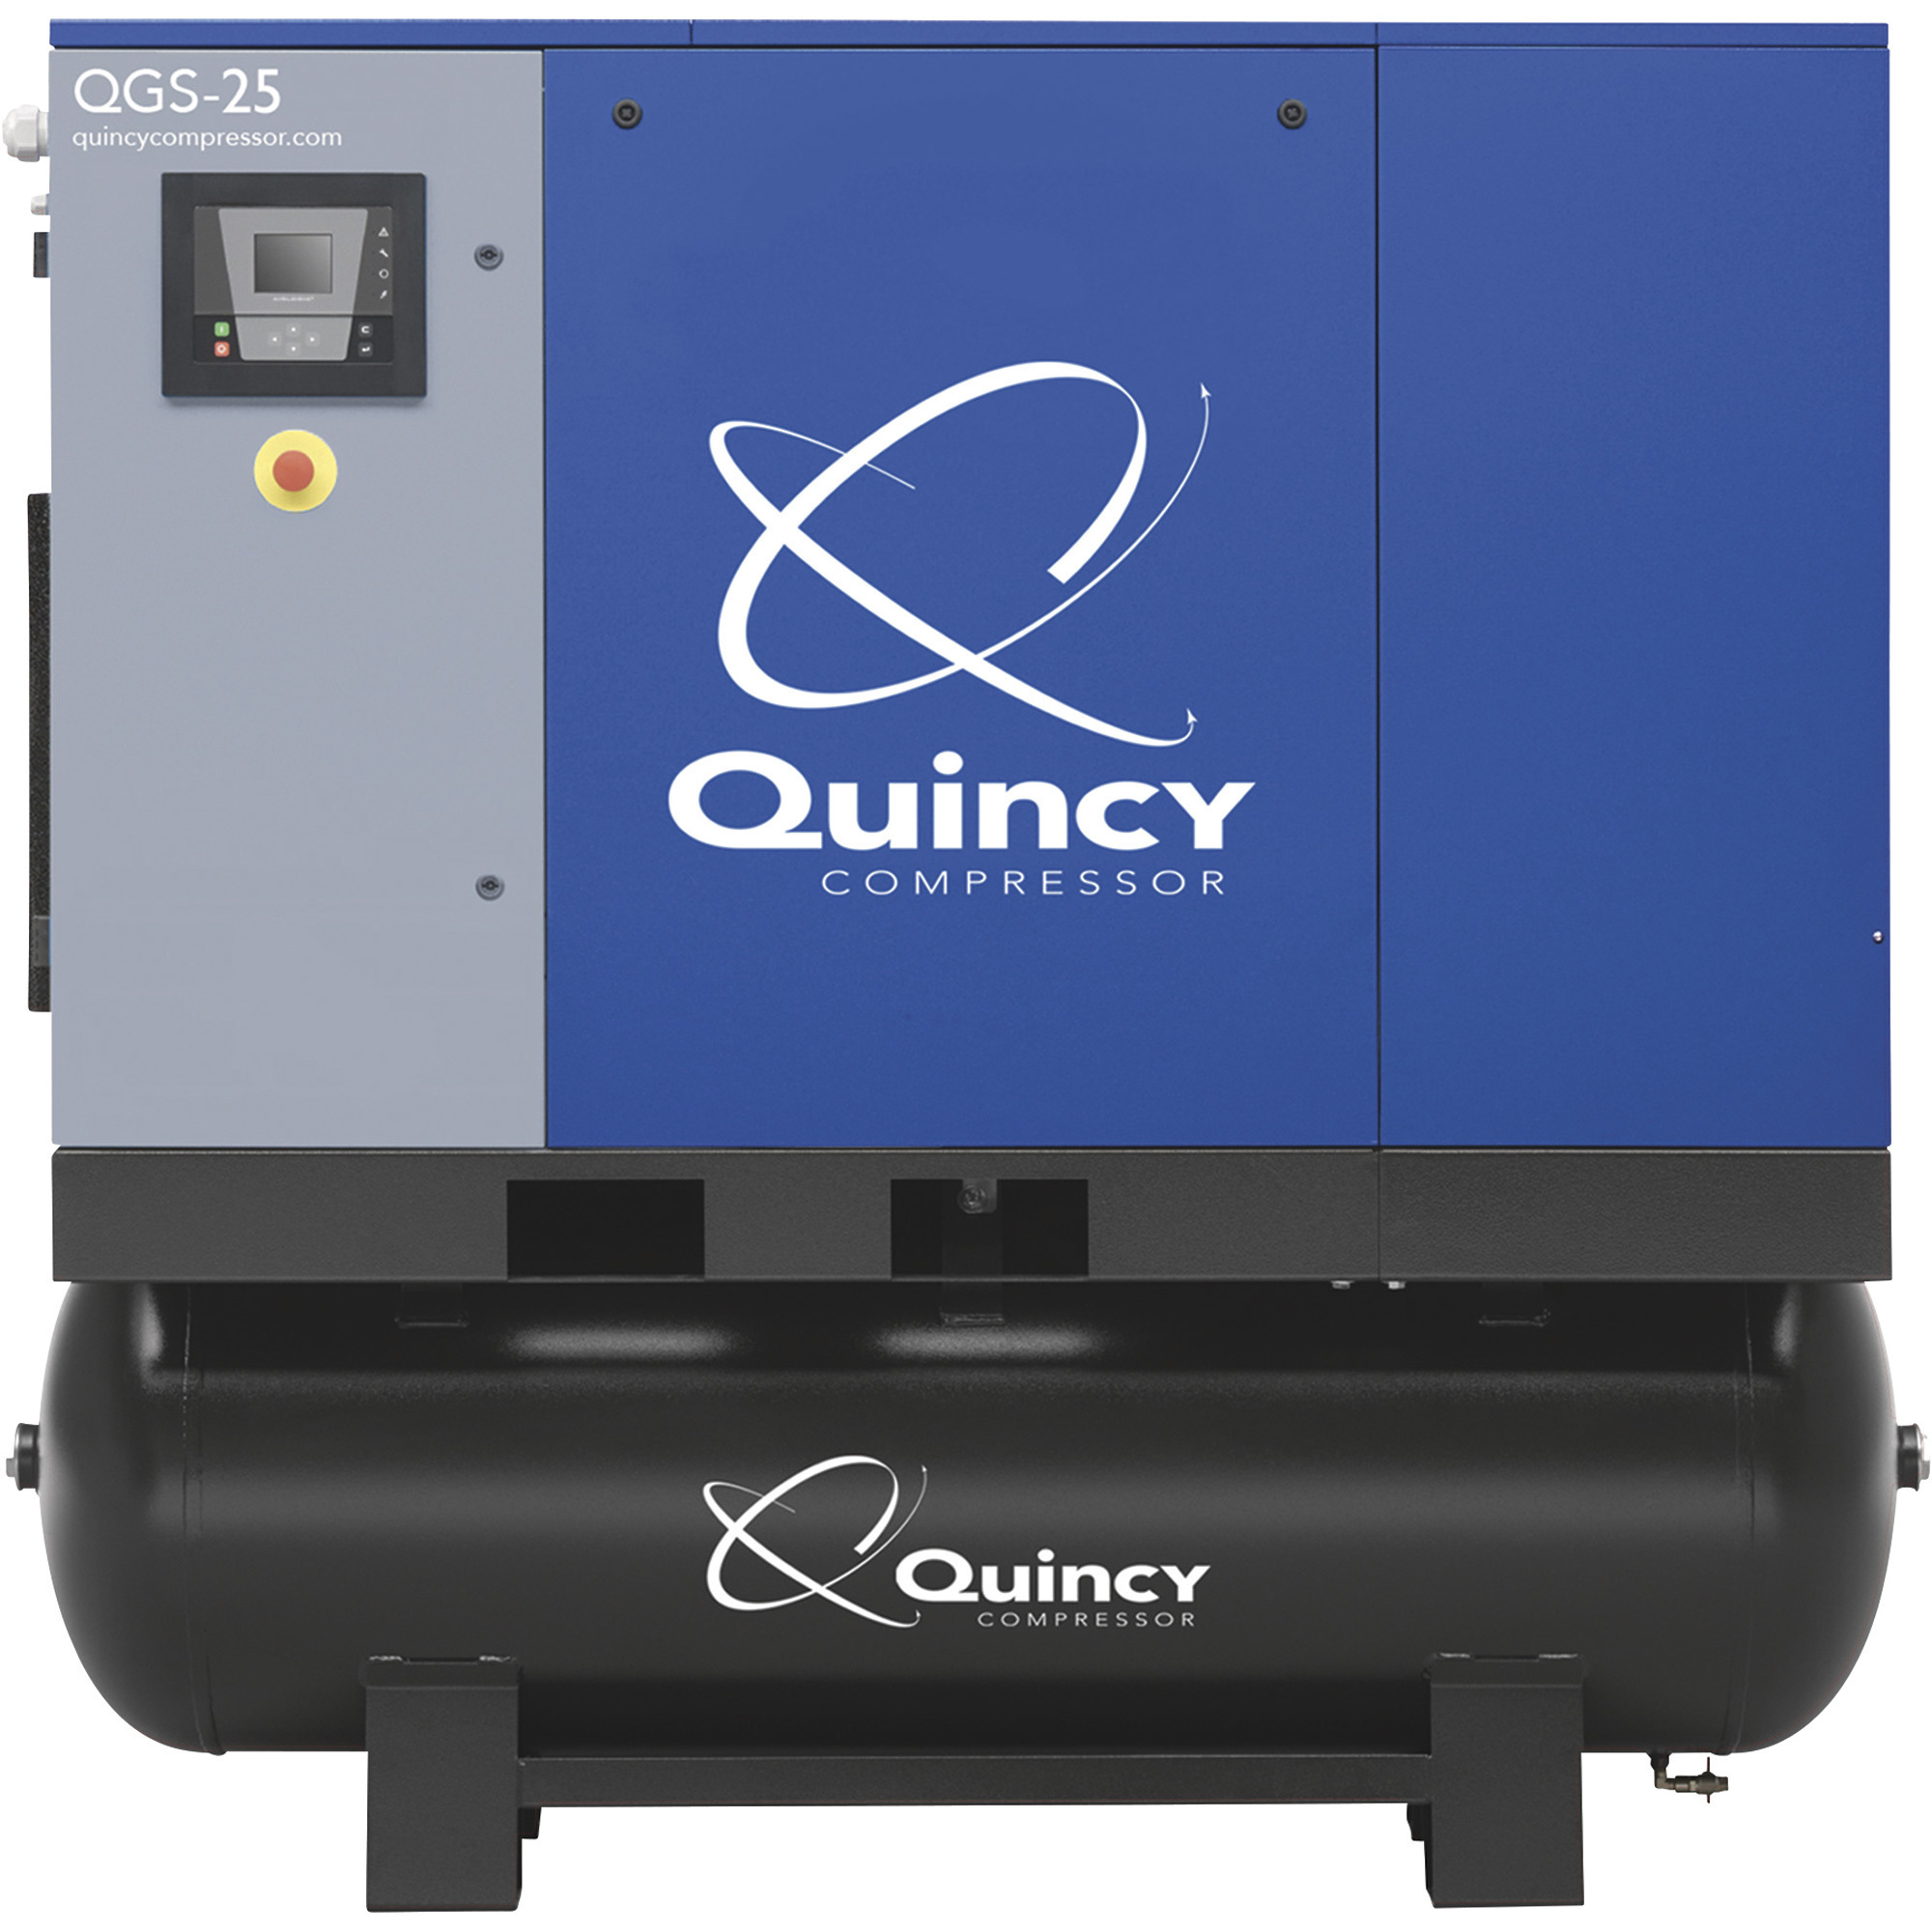 Quincy Compressor 4152026541